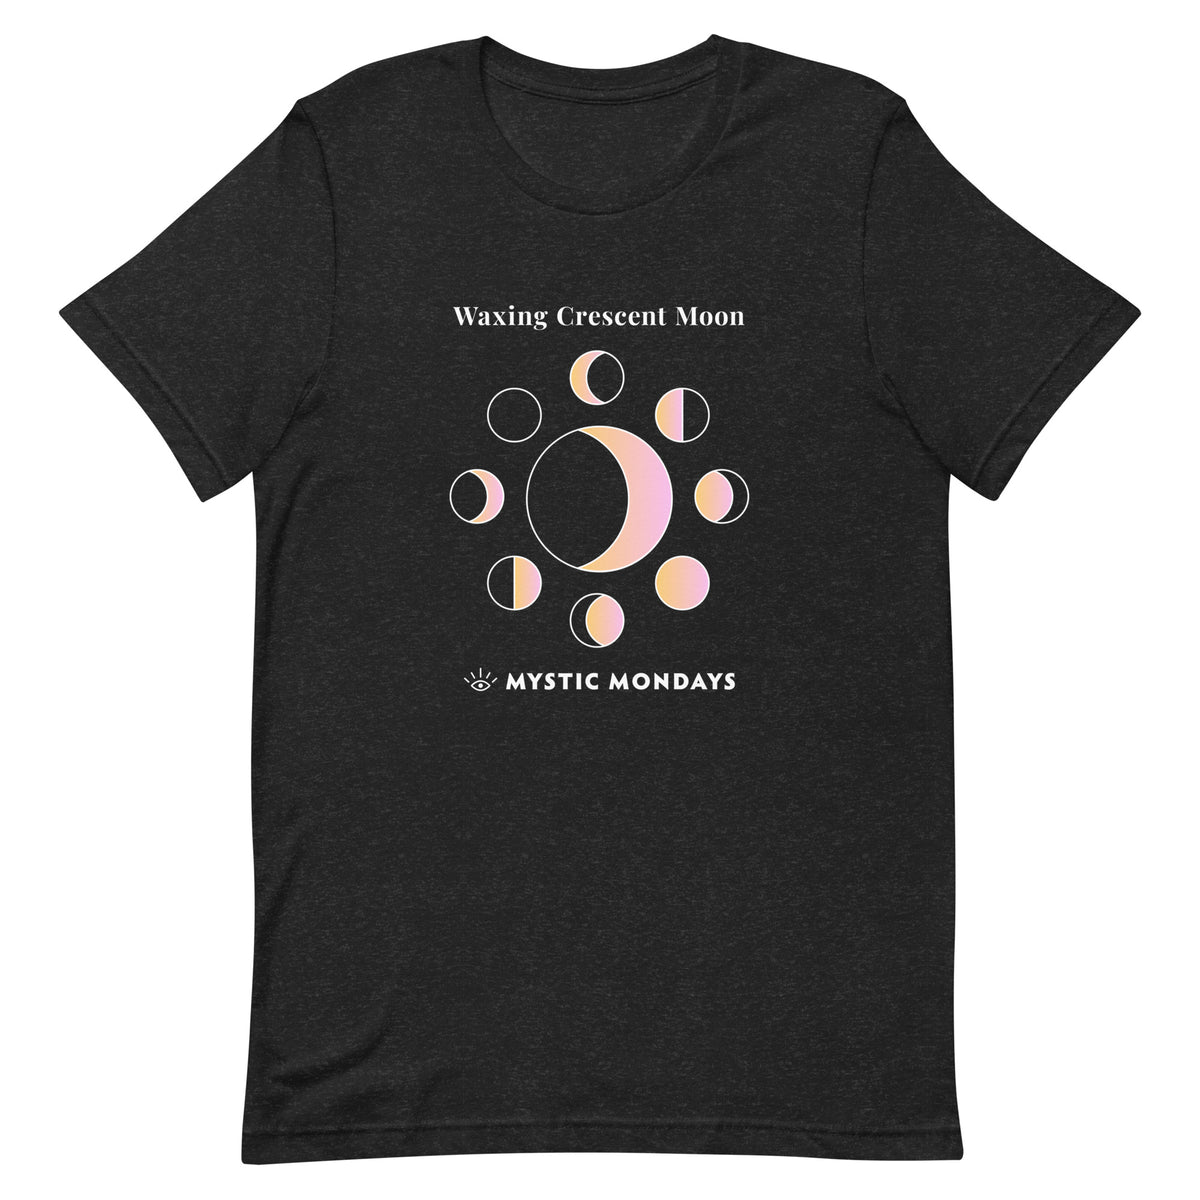 Waxing Crescent Moon T-shirt